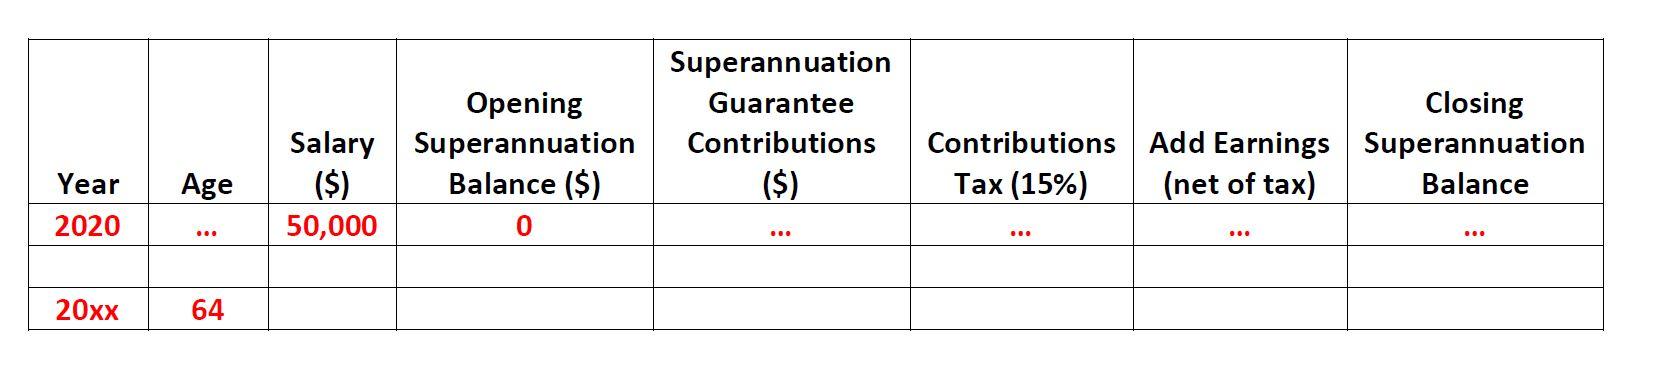 Superannuation Guarantee Contributions ($) Opening Superannuation Balance ($) 0 Closing Contributions Add Earnings Superannua